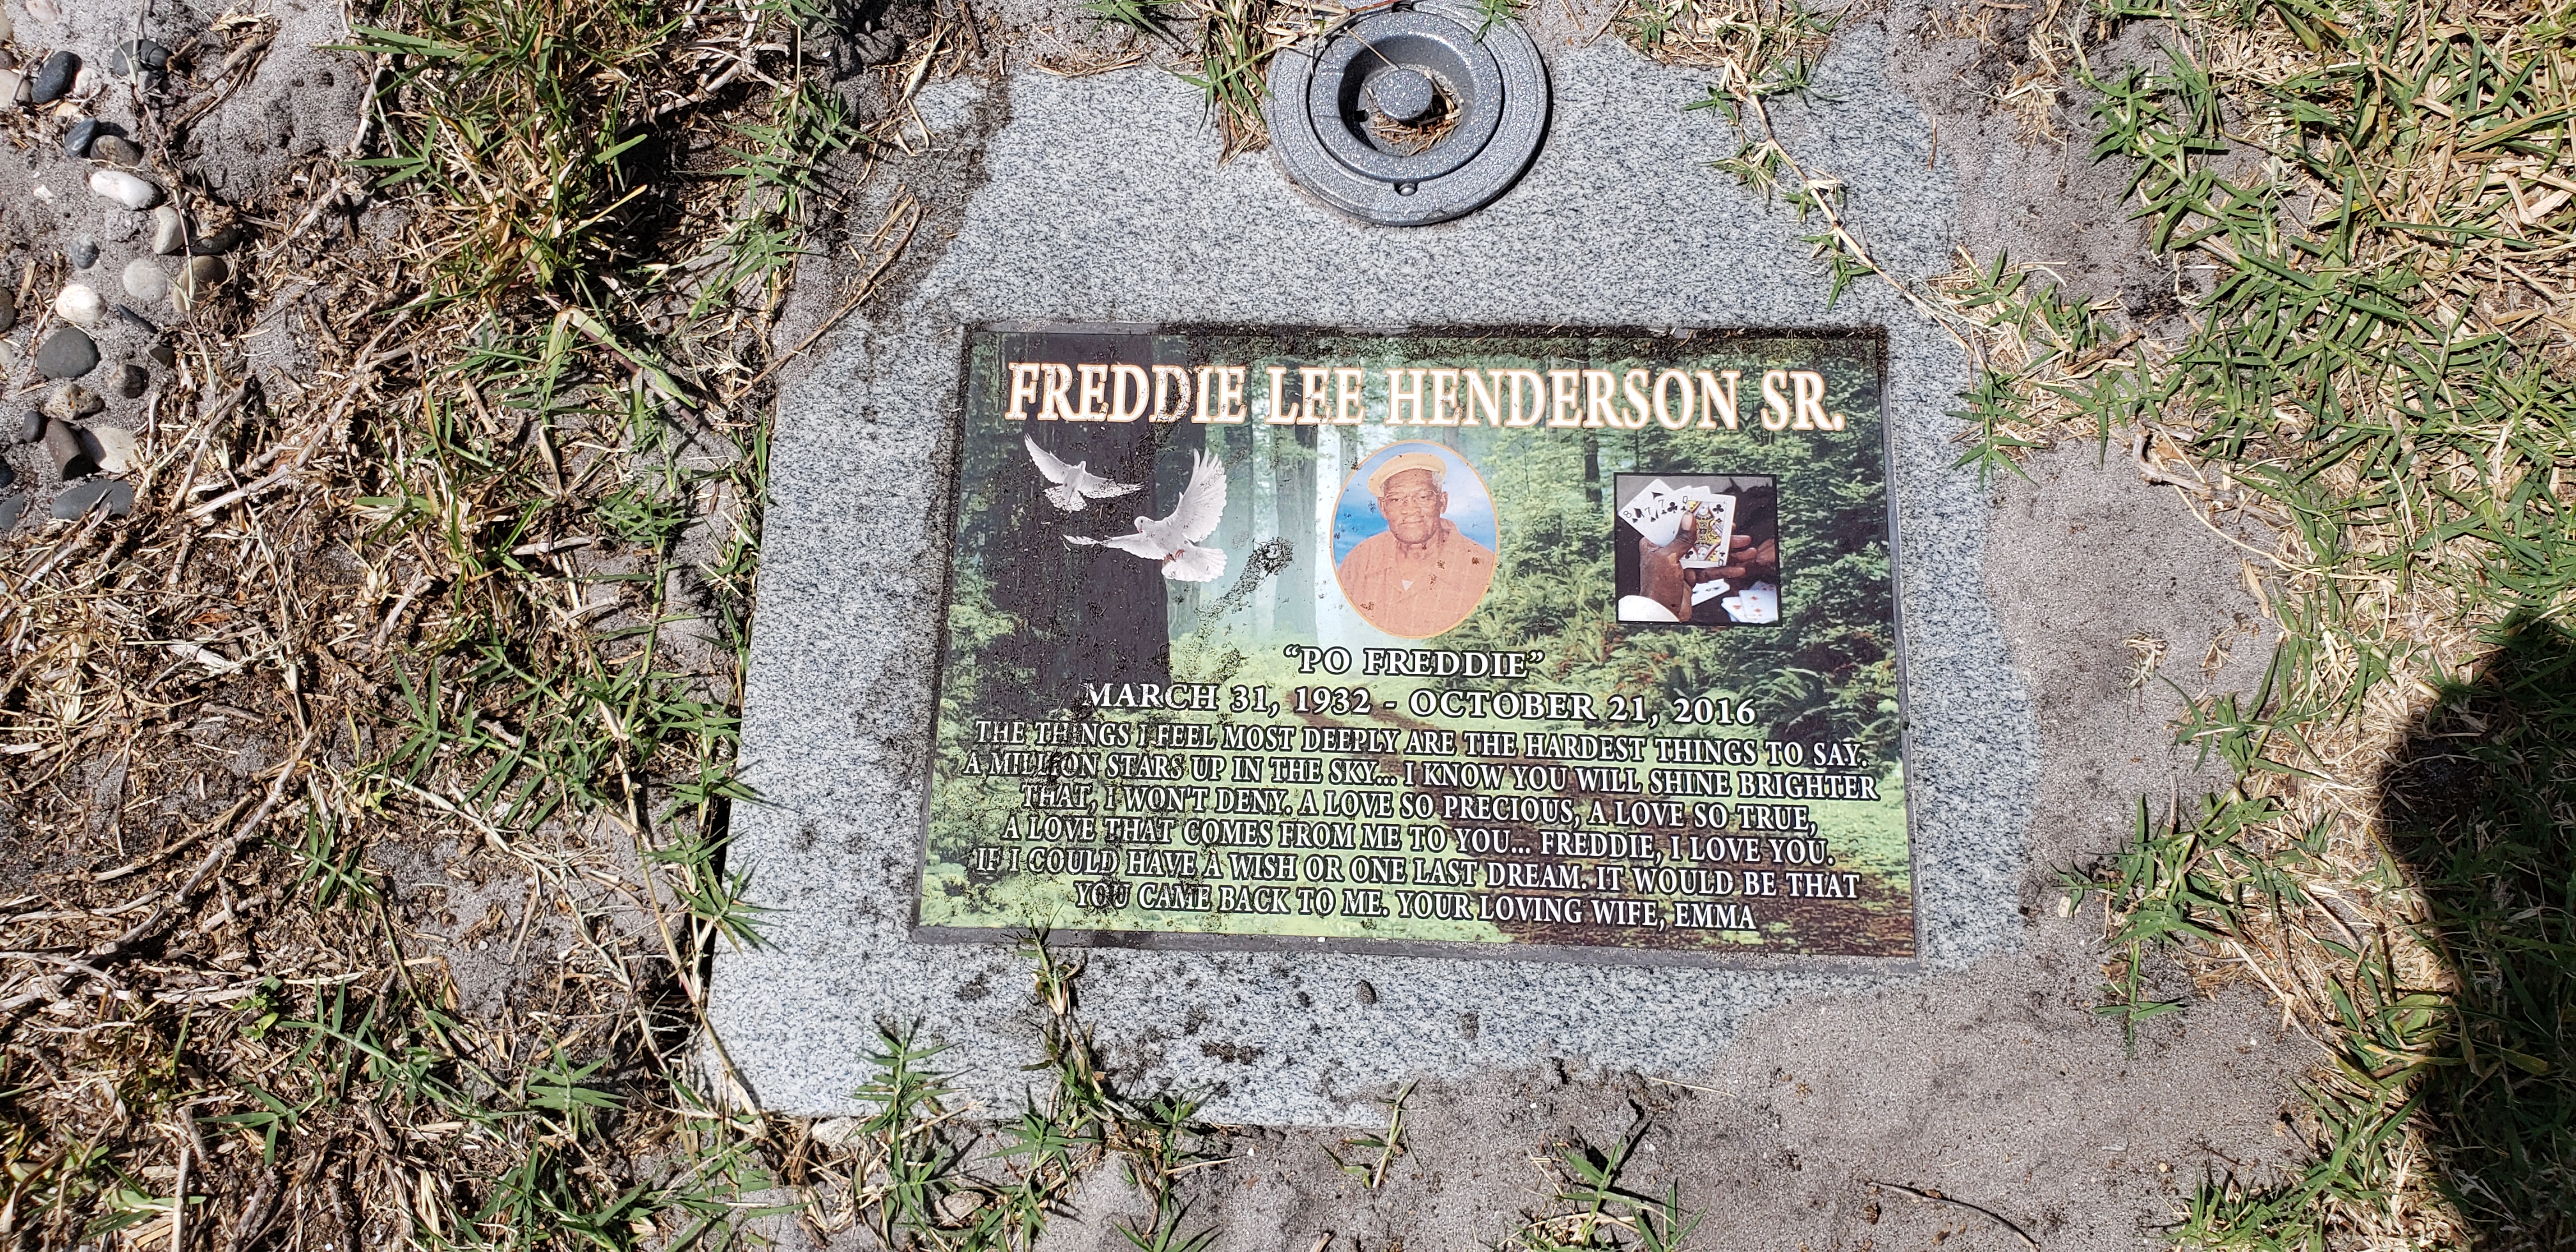 Freddie Lee "Po Freddie" Henderson, Sr